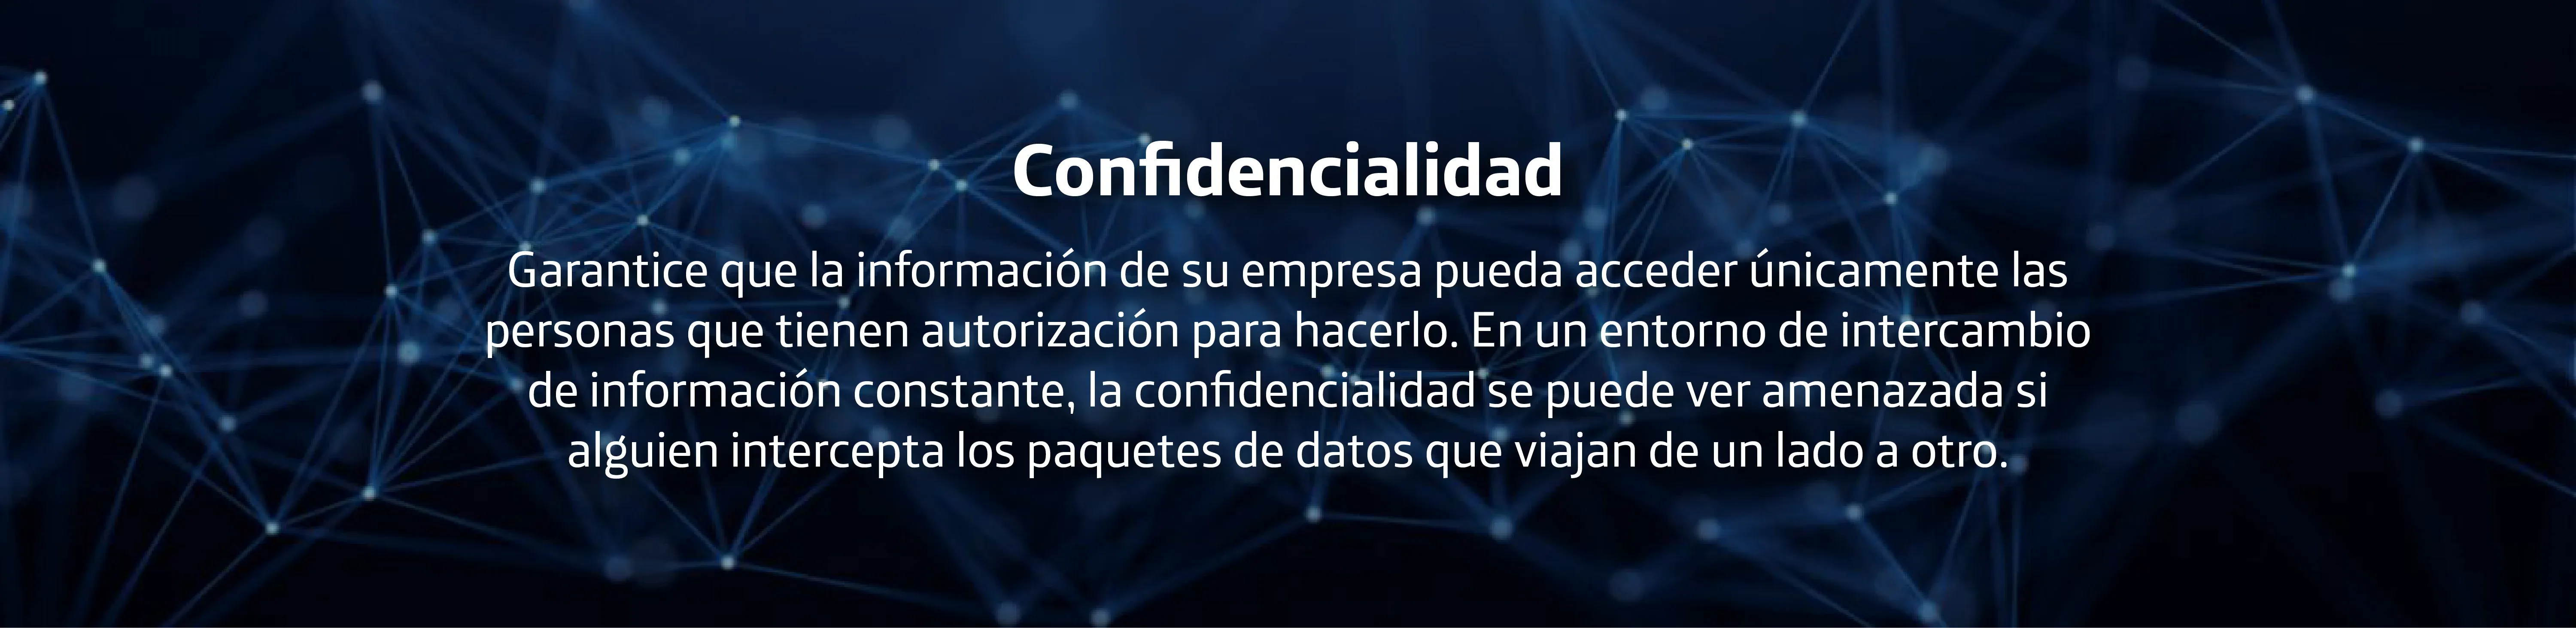 Banner_confidencialidad_d34458599e.jpeg